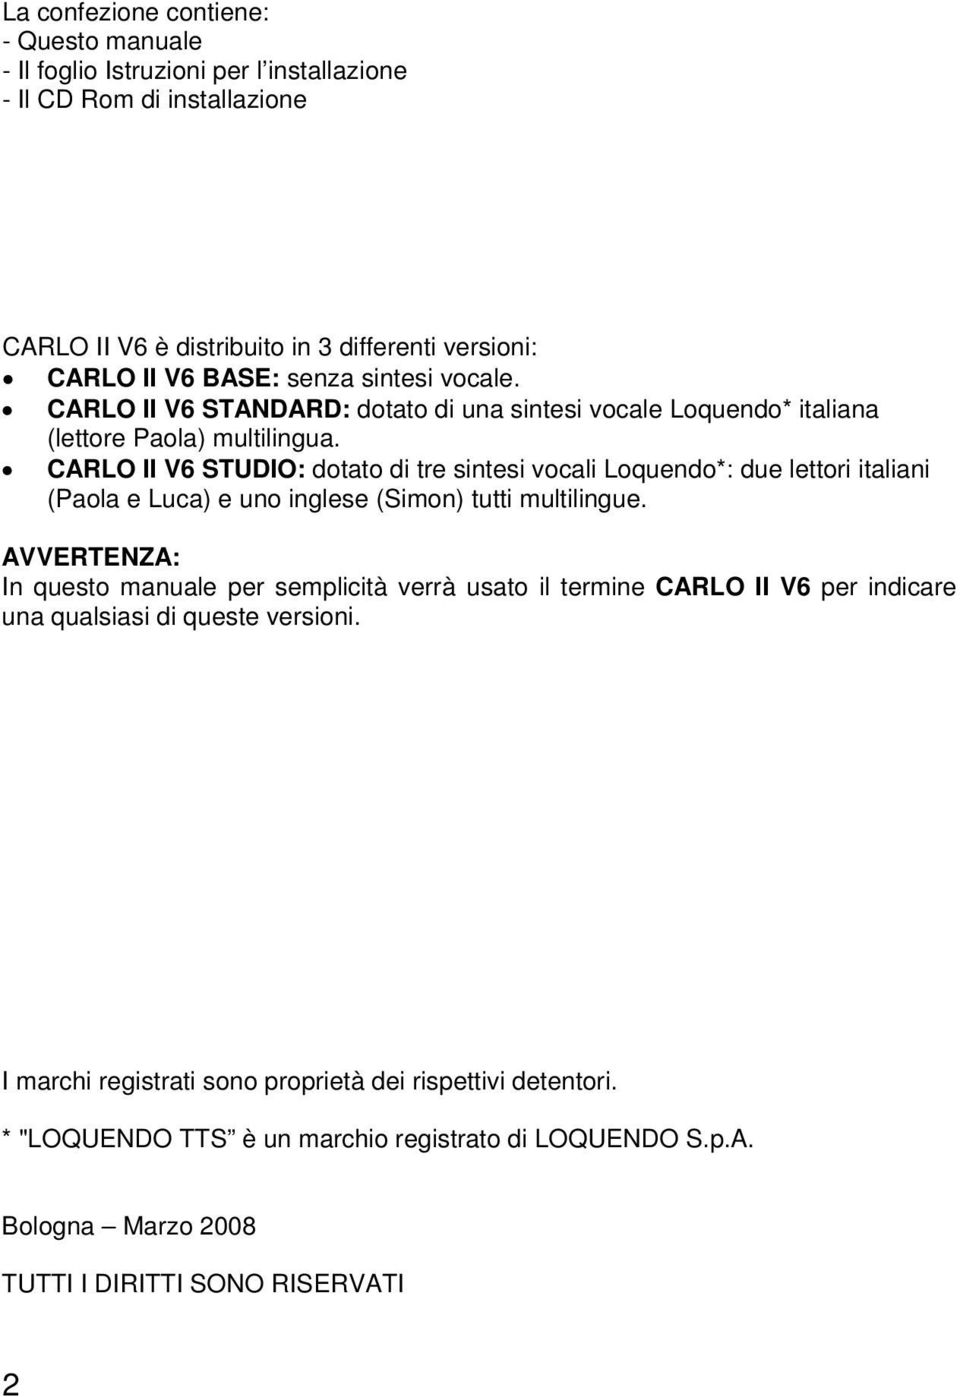 CARLO II V6 STUDIO: dotato di tre sintesi vocali Loquendo*: due lettori italiani (Paola e Luca) e uno inglese (Simon) tutti multilingue.